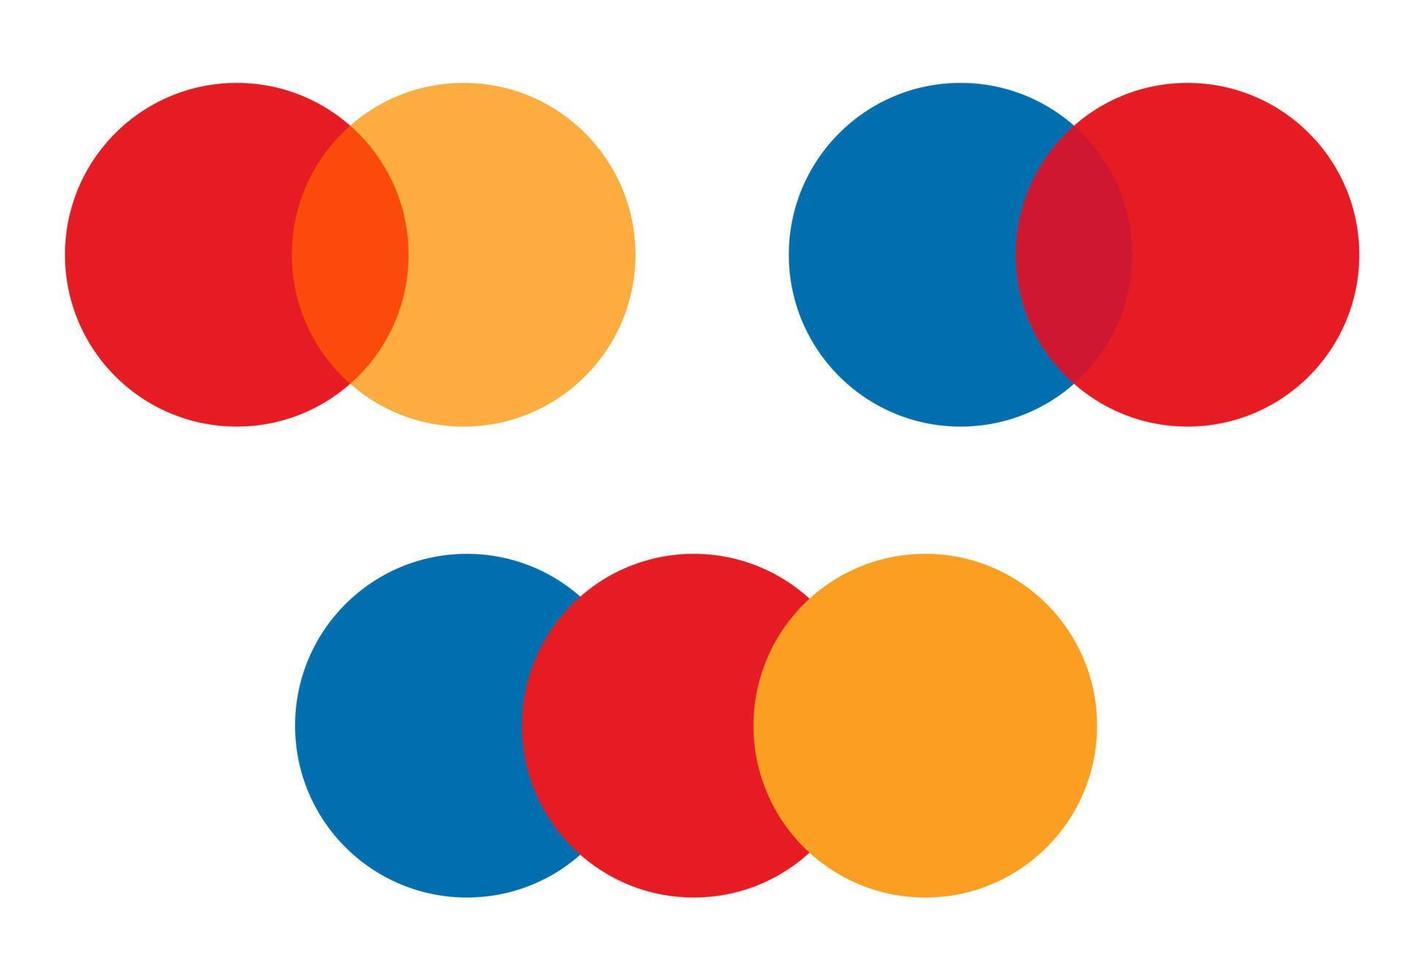 rot-orangefarbene Kreis-Logo-Vorlage für Kreditkarten-Mastercard. Vektor isolierter Satz.